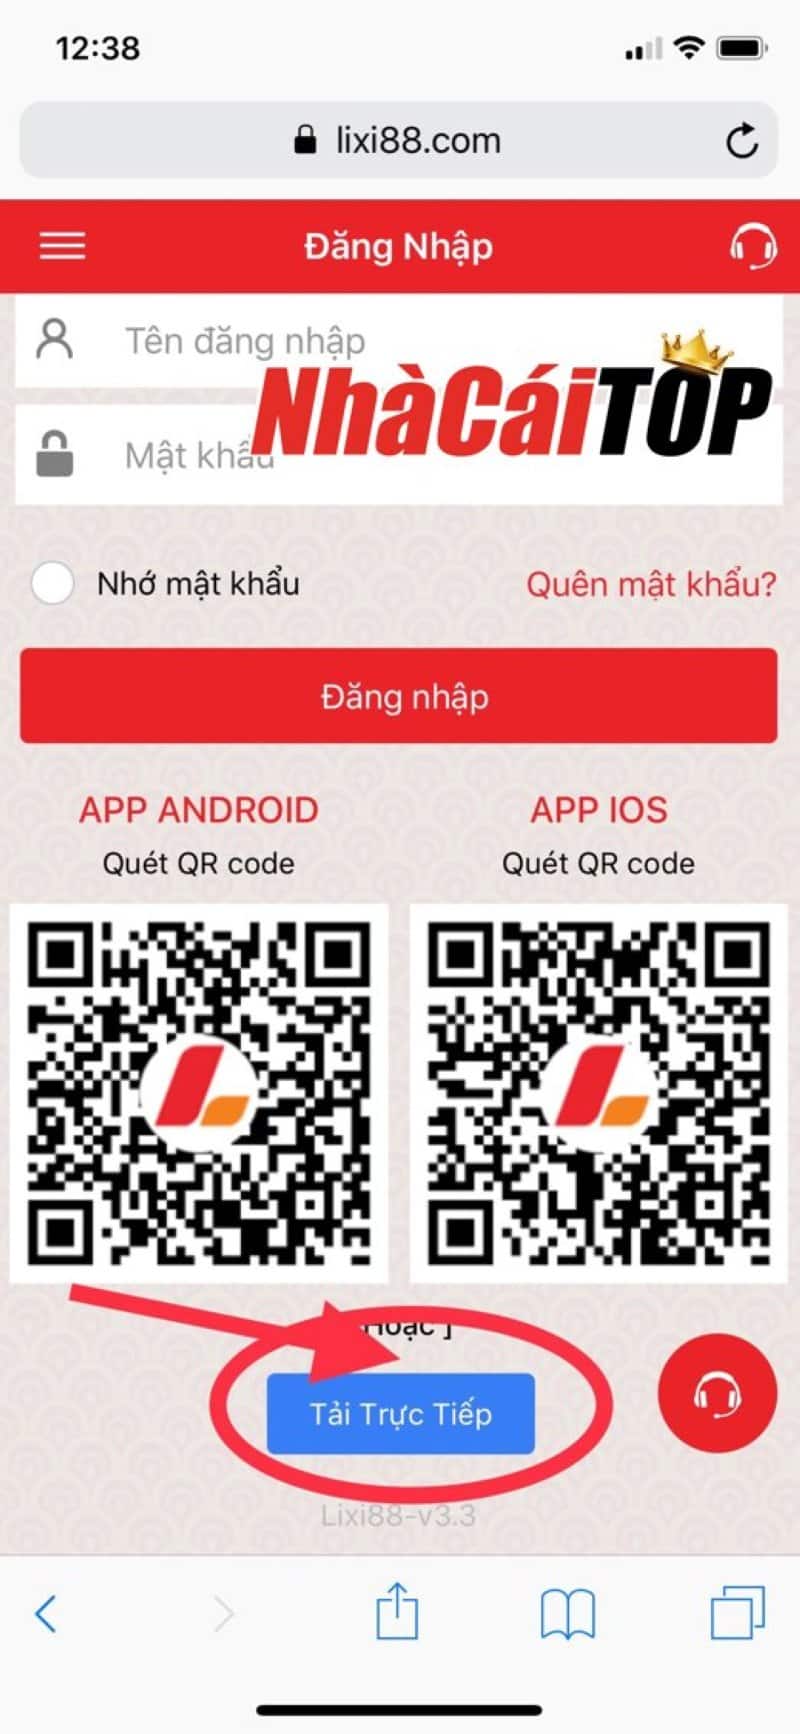 Hướng dẫn tải App Lixi88 